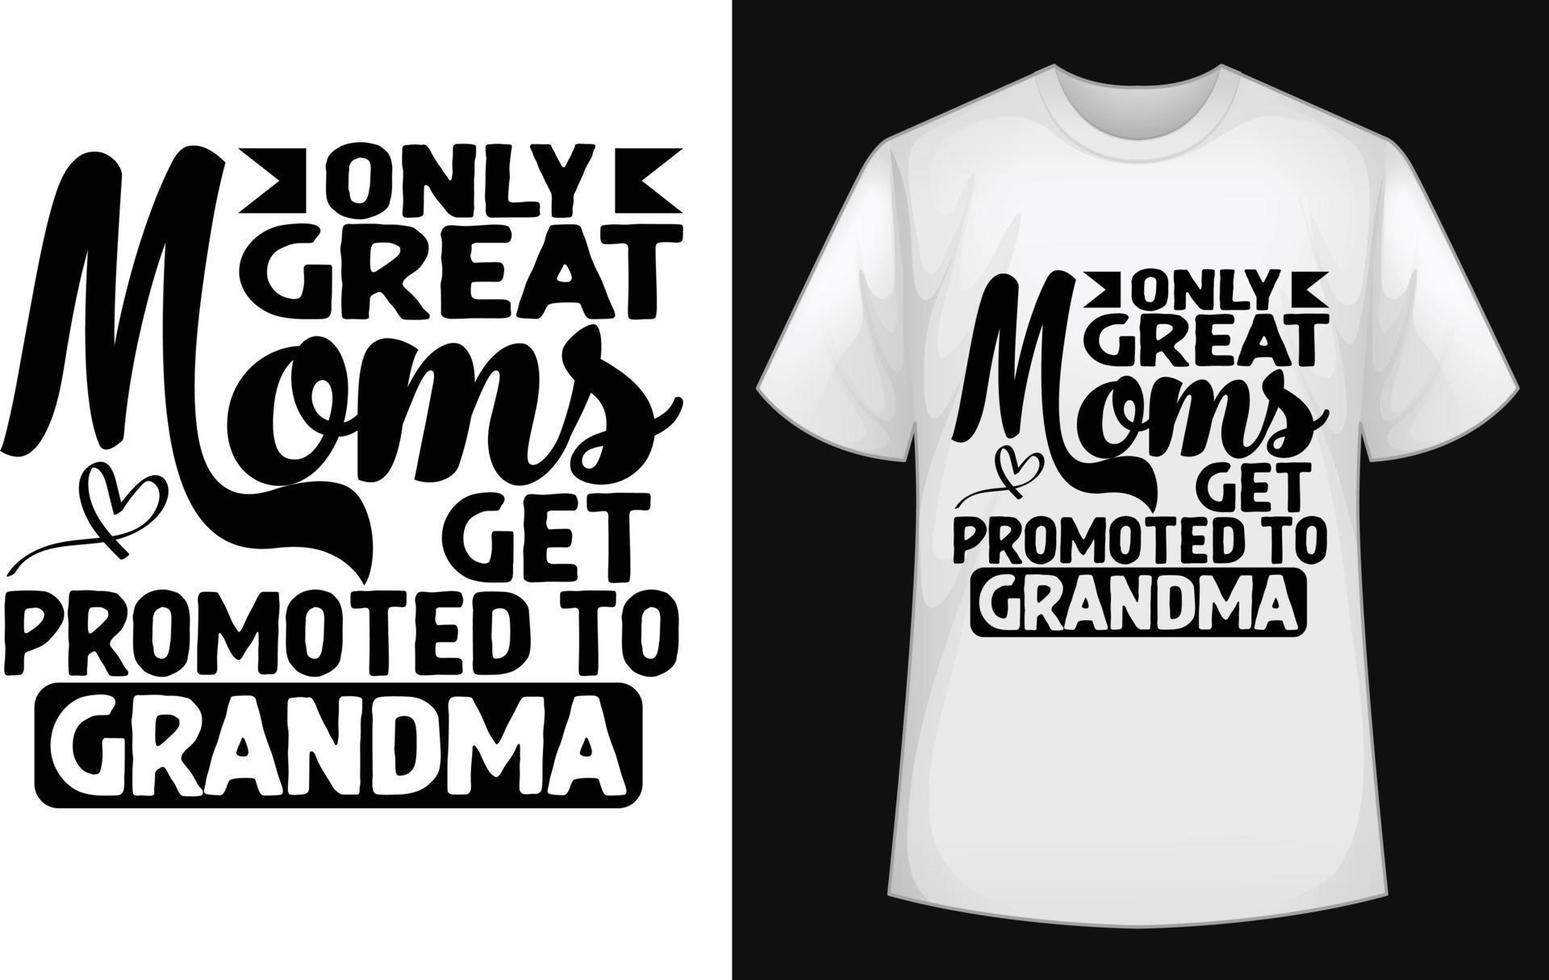 enkel en alleen Super goed moeders krijgen gepromoot naar grootmoeder typografisch t overhemd ontwerp vector voor vrij